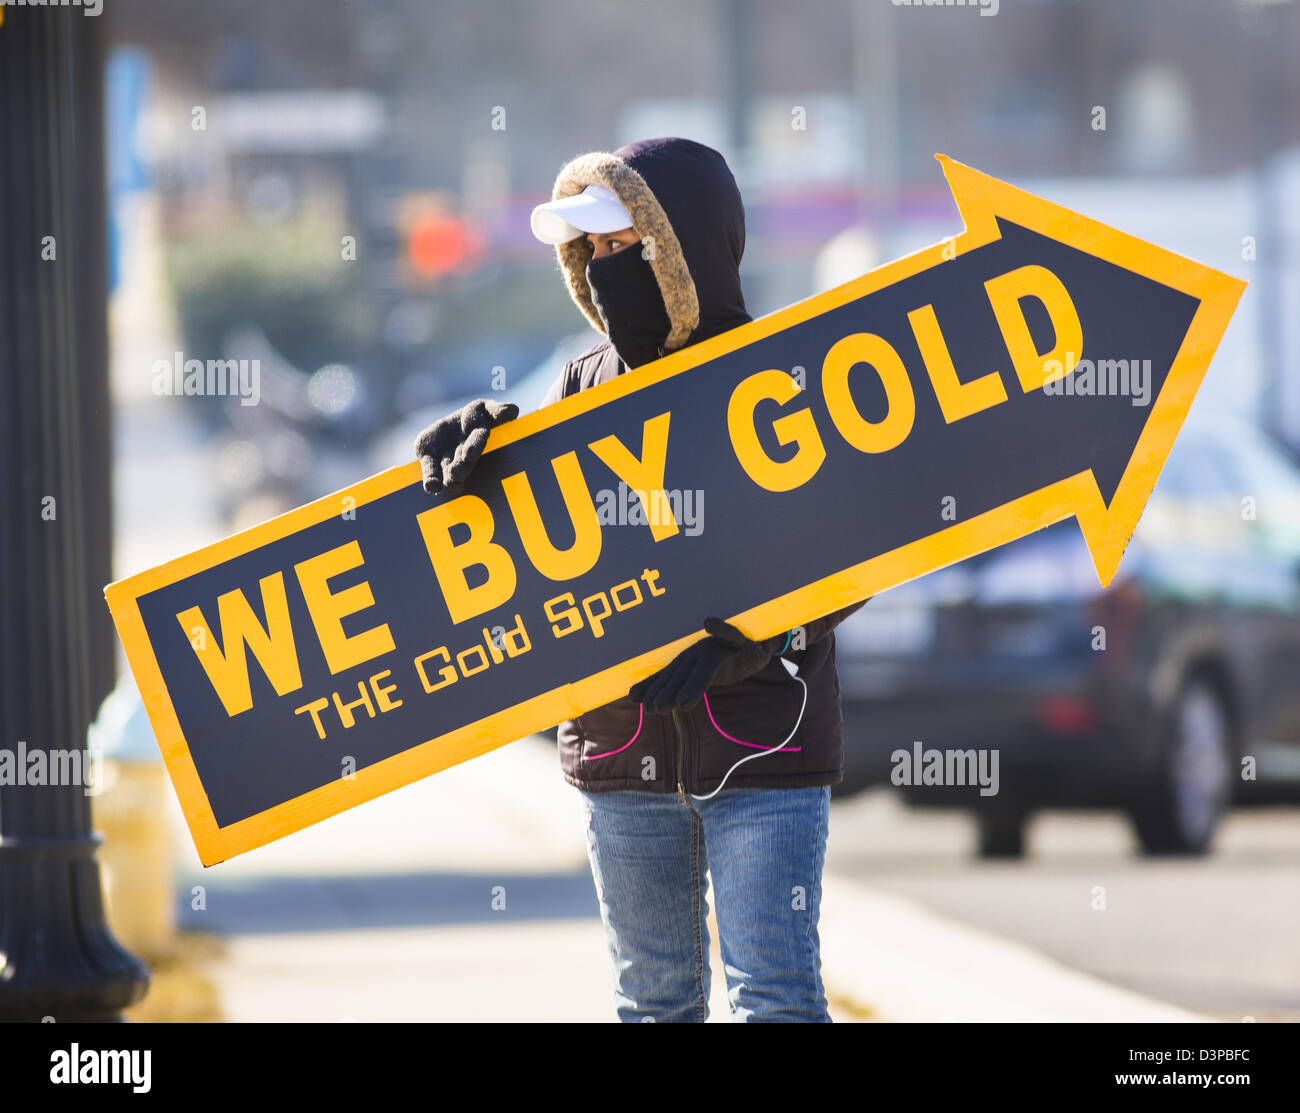 ARLINGTON, VIRGINIA, USA - Femme nous acheter de l'or signer sur trottoir pour attirer les clients. Banque D'Images